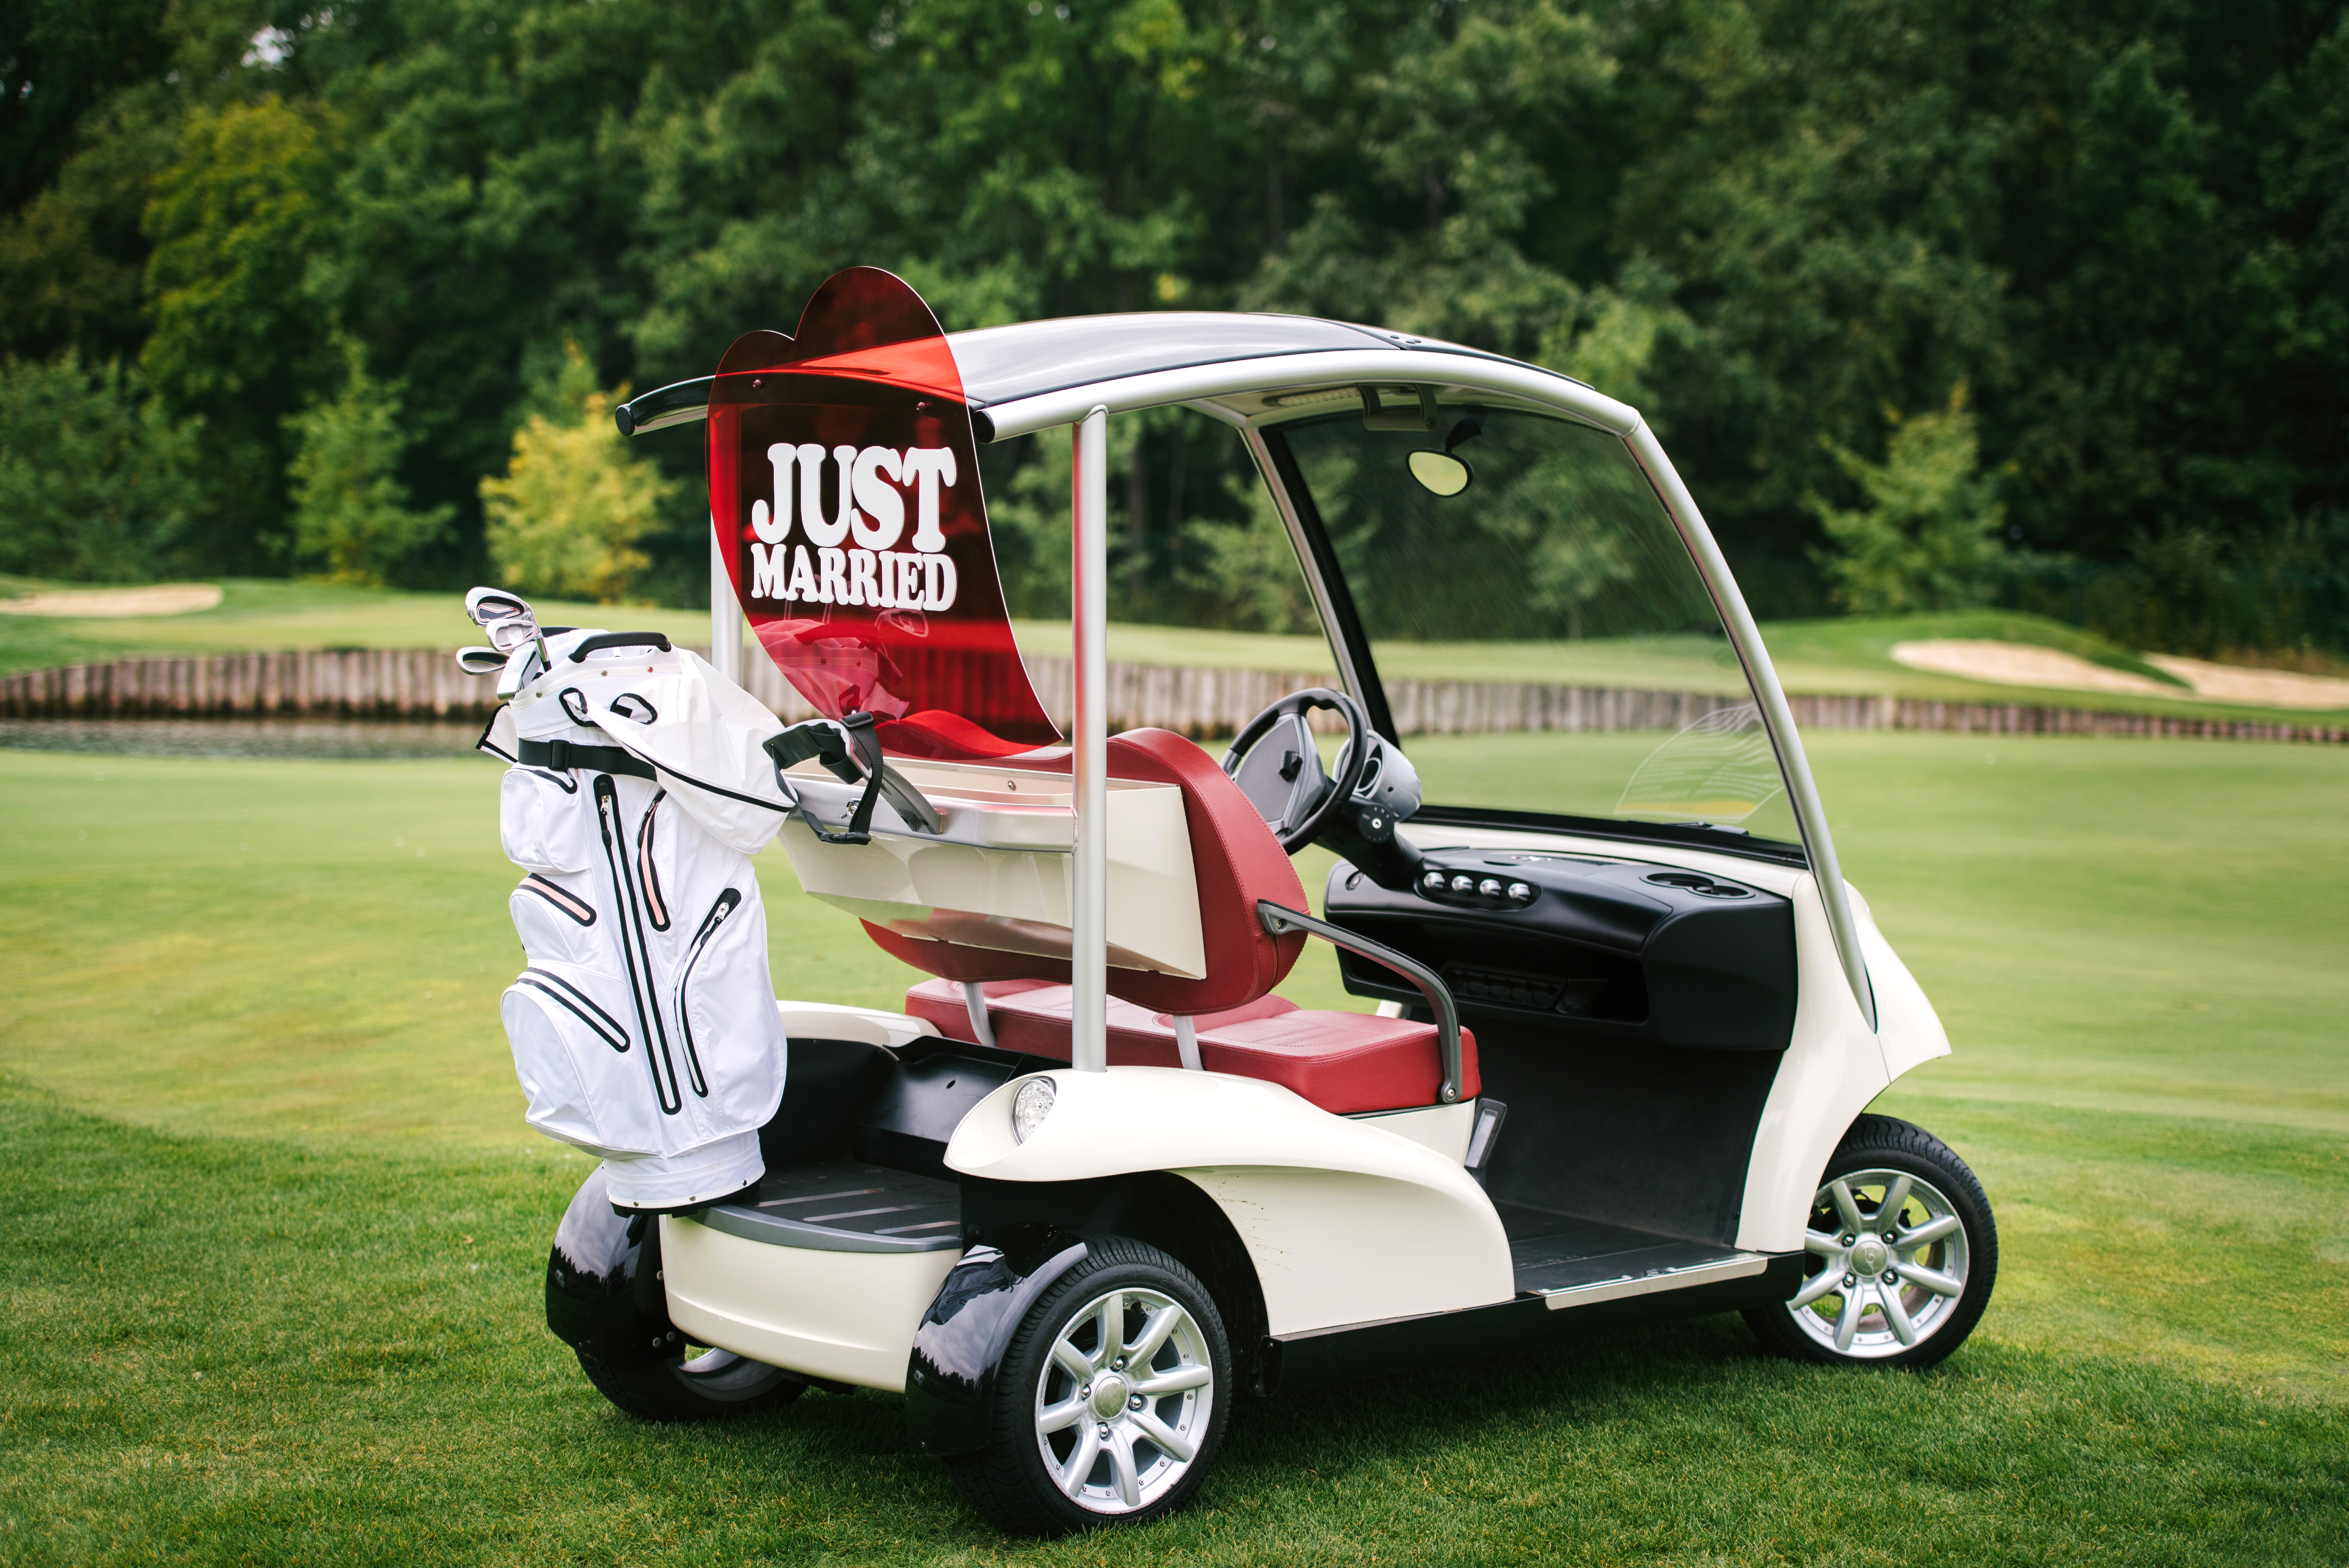 Un carrito de golf con las palabras "Just Married" en la parte trasera | Fuente: Shutterstock